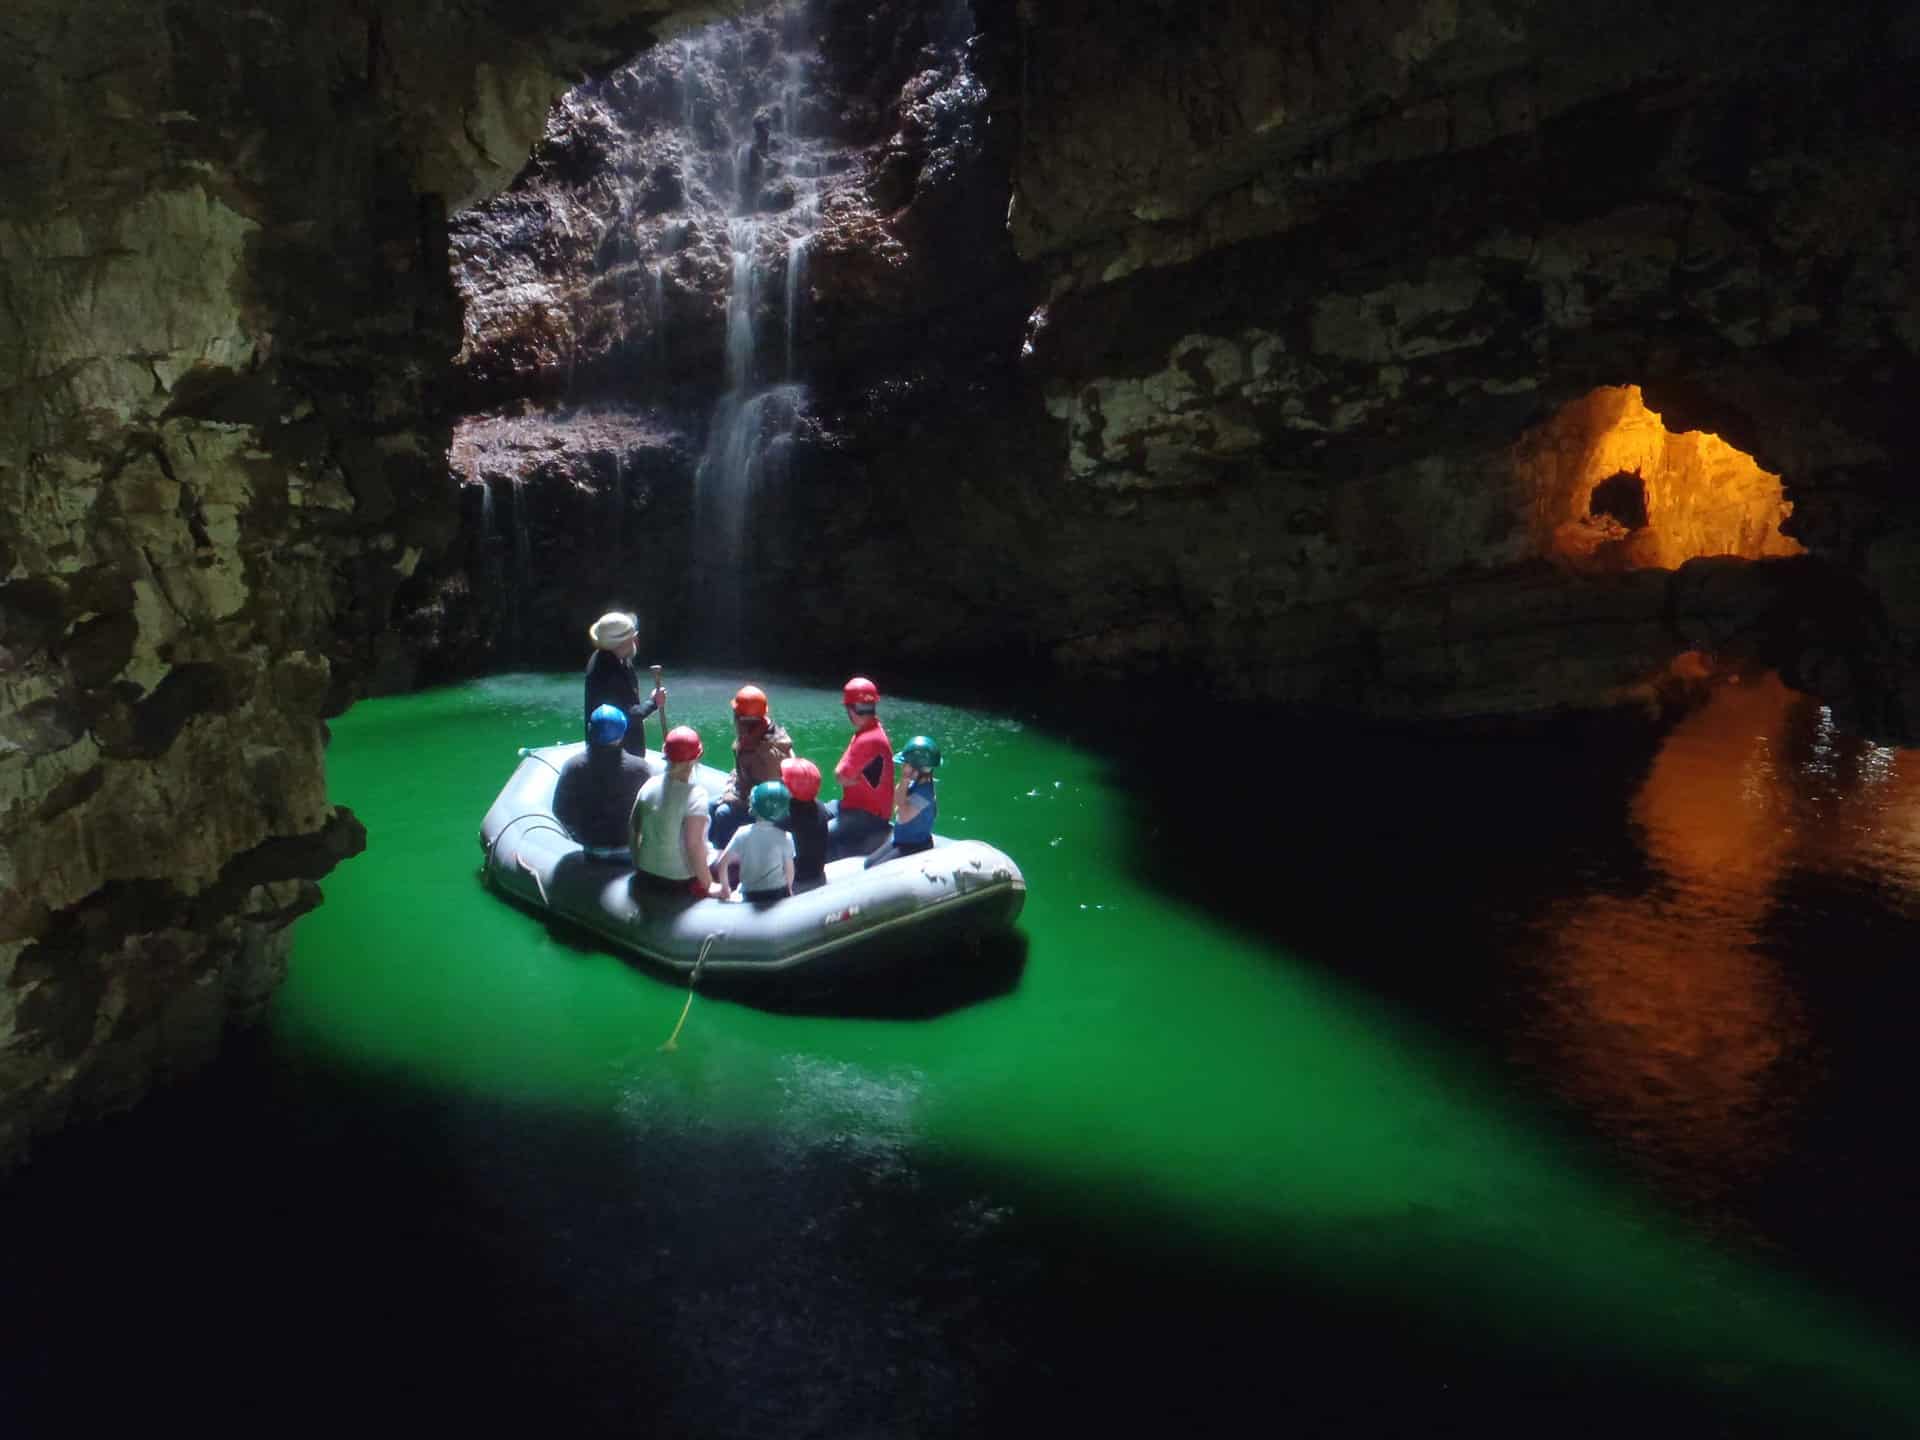 苏格兰奇幻之旅 | 神奇斯穆洞穴和瀑布